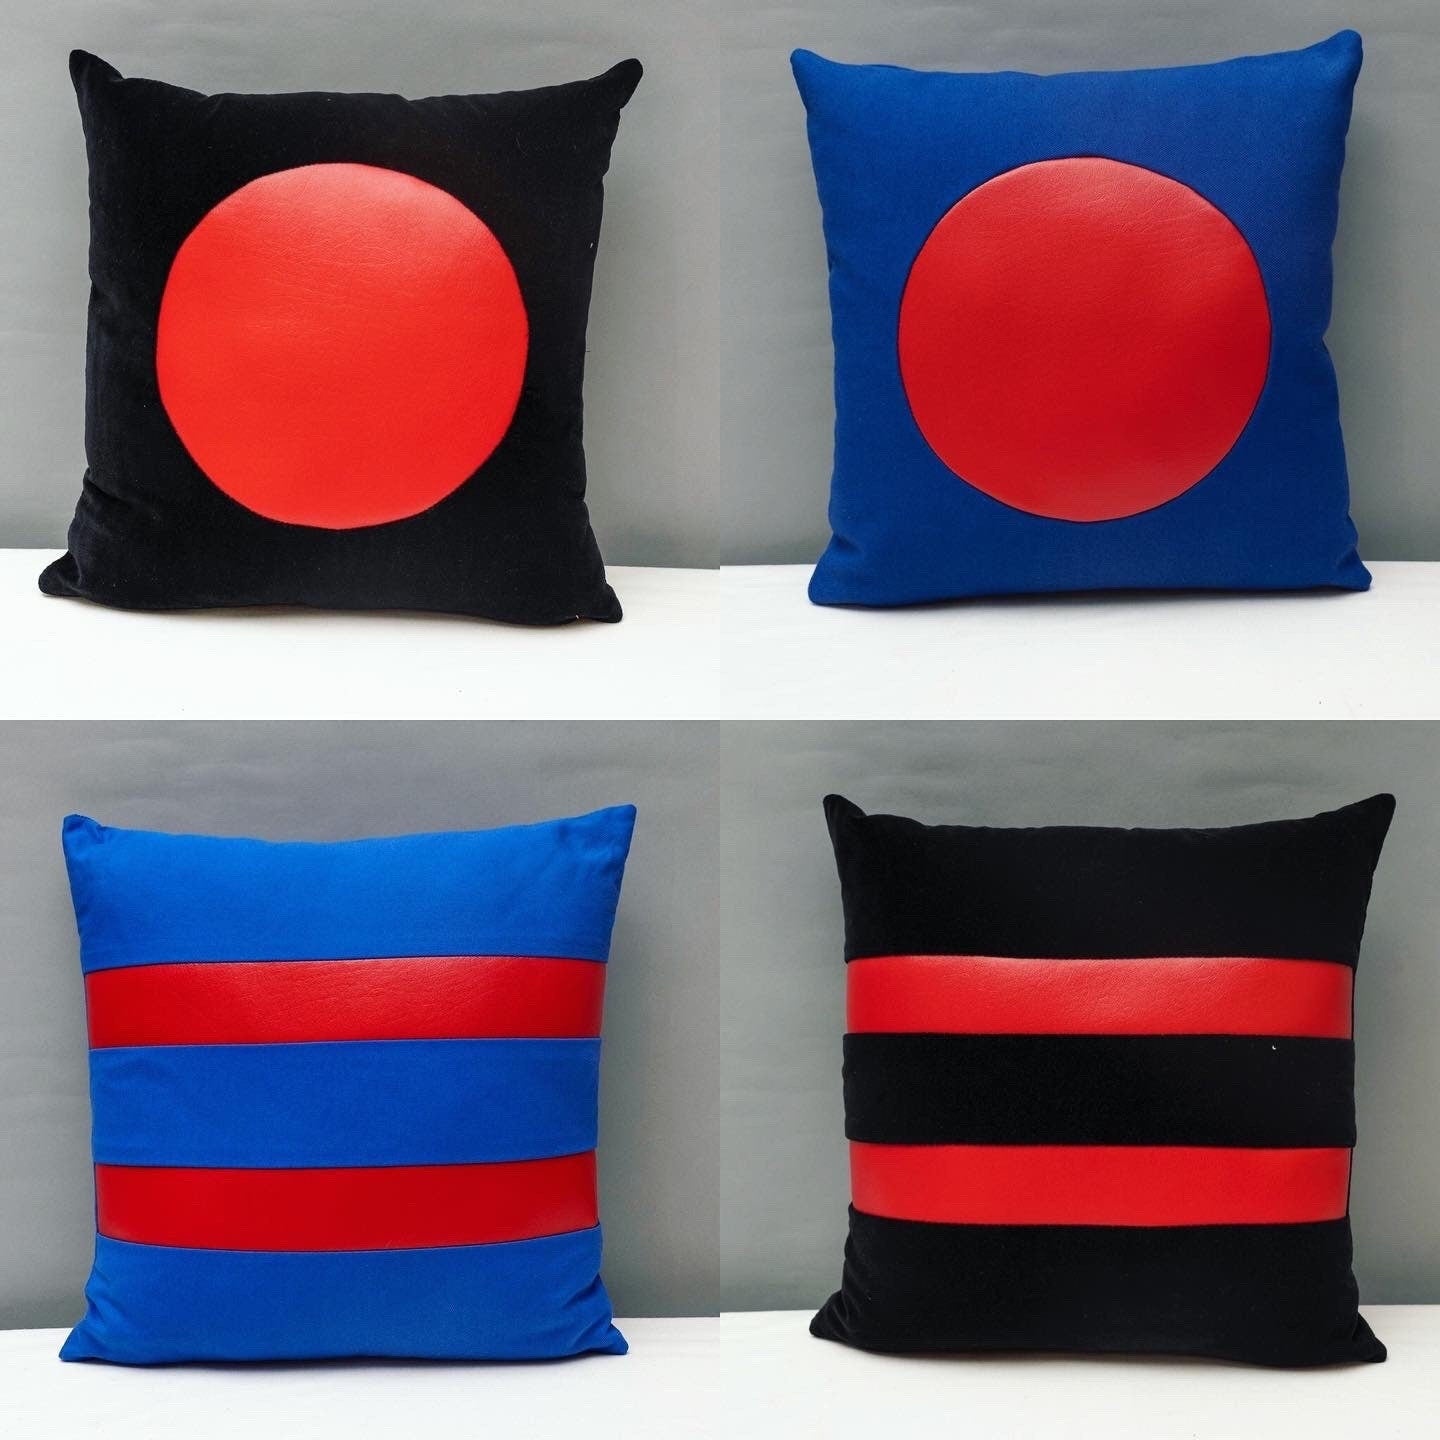 Black velvet geometric handmade pillow 16 x 16” inches